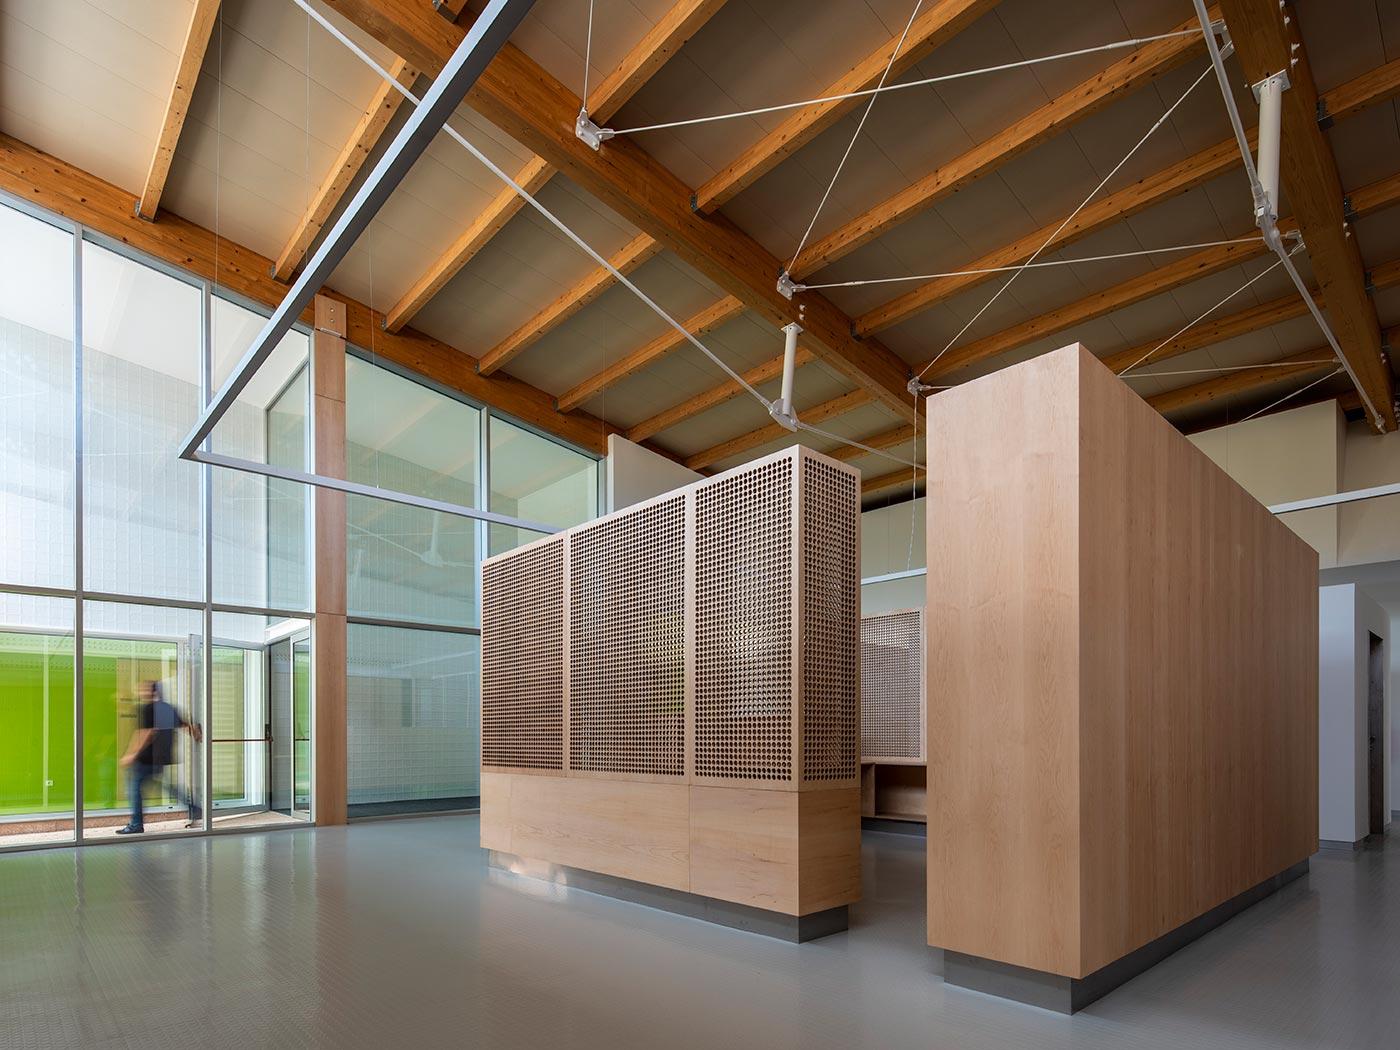 Cubierta sostenible y eficiente con teja y madera en el Centro de salud en Pereiro de Aguiar (Ourense), de OLAestudio